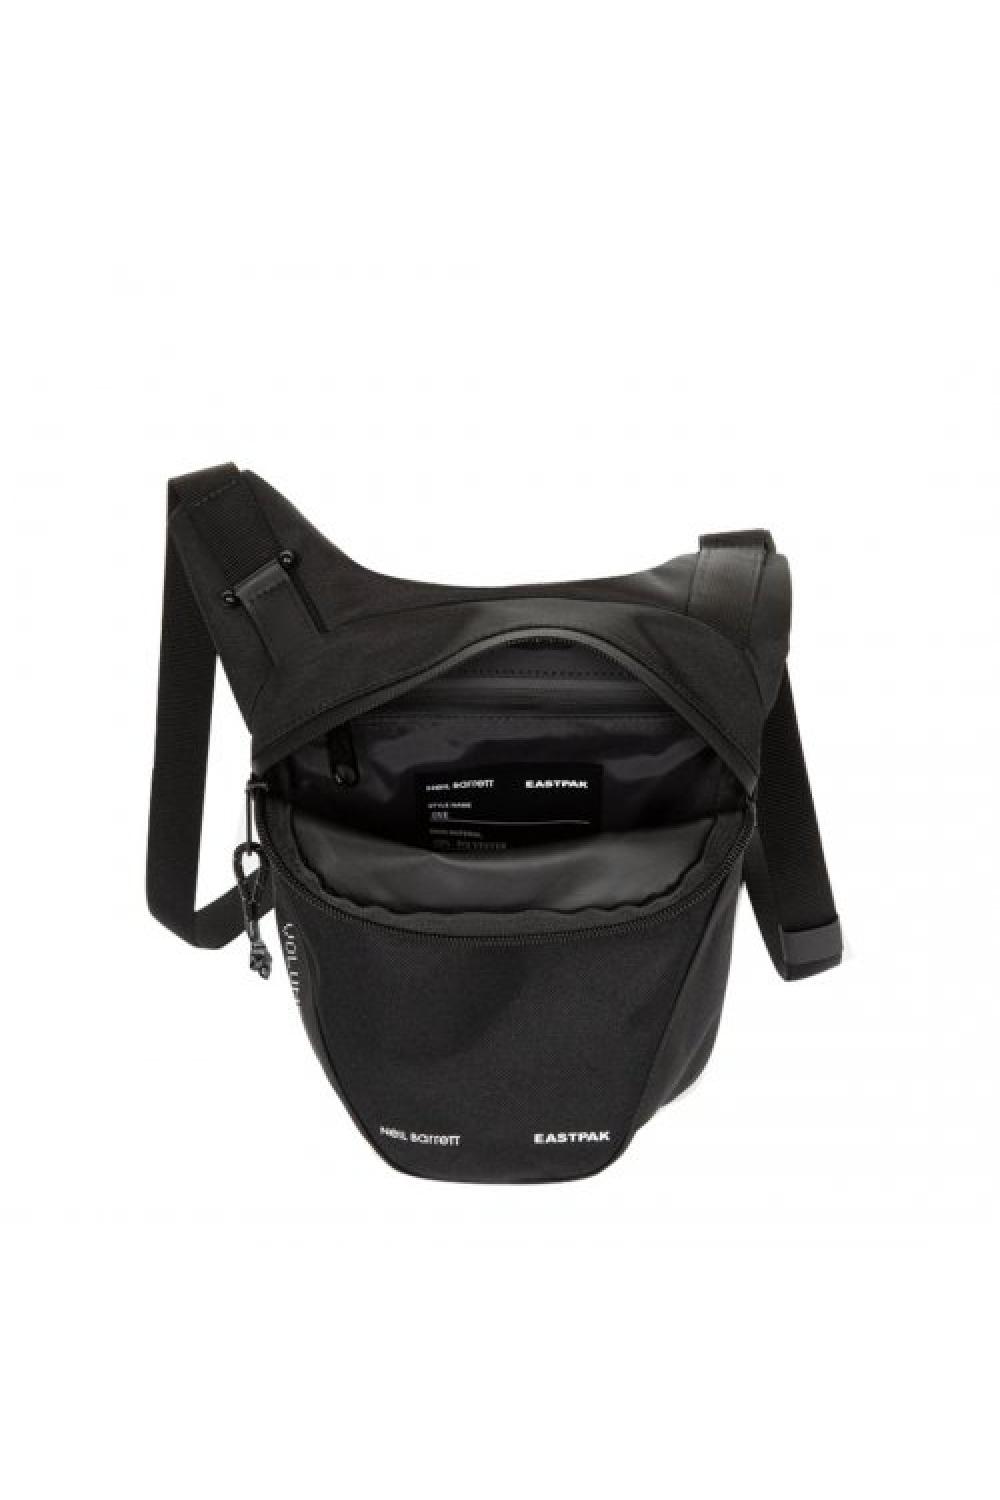 EASTPAK x Neil Barrett Cross Body Bag One (3 Liter) - Black (EK0A5BB5-S08)